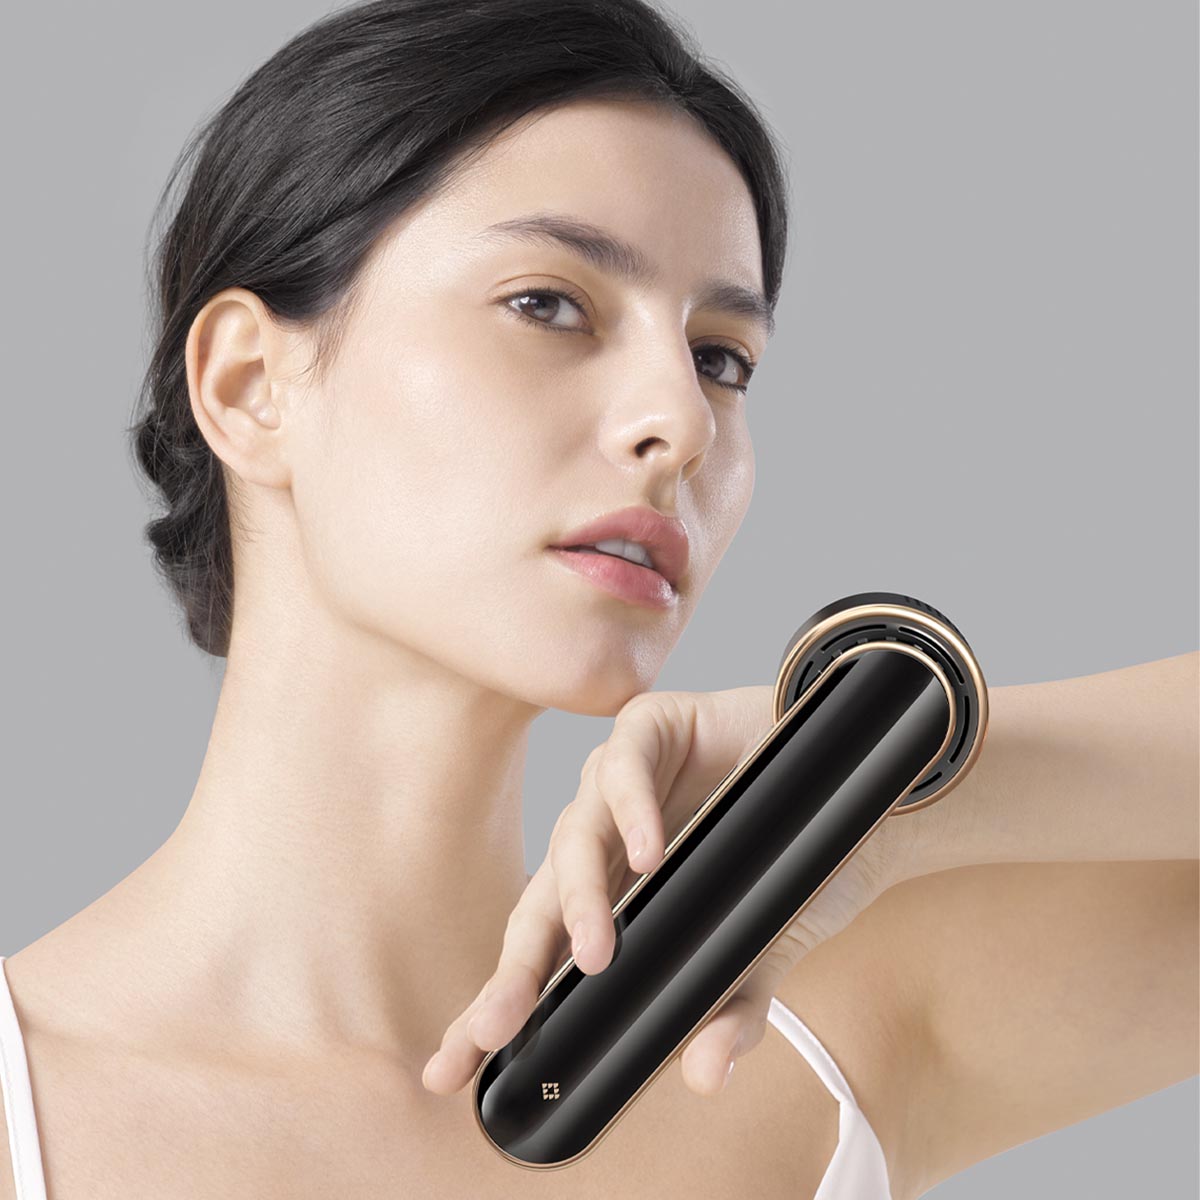 Woman using JOVS Blacken DPL Photorejuvenation Device on sensitive skin for a pain-free photo rejuvenation treatment.